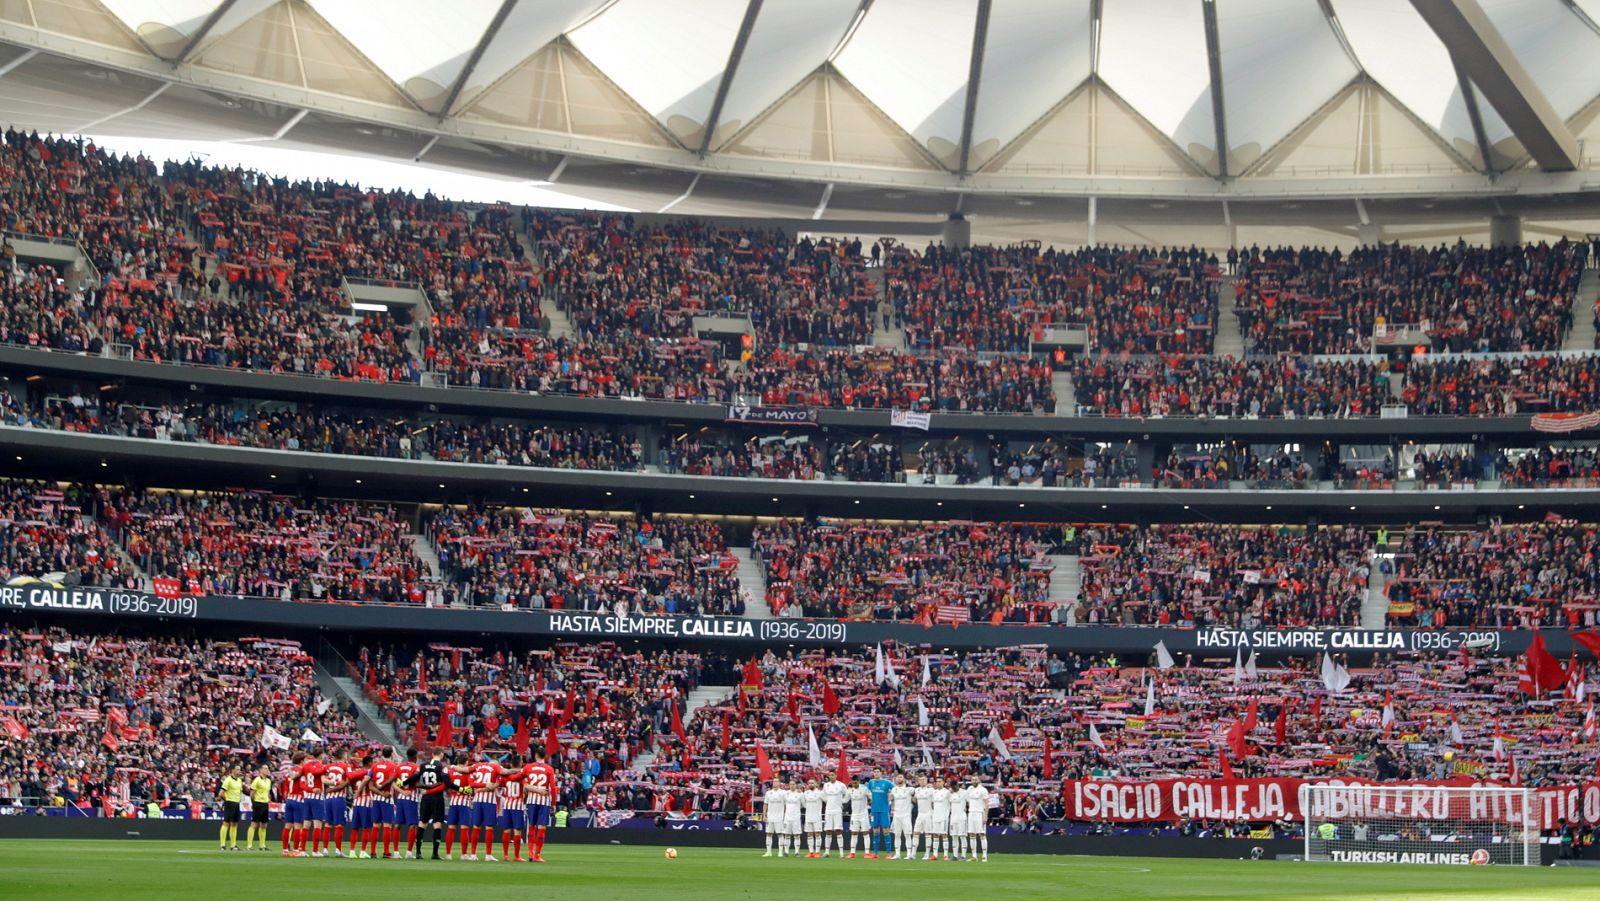 Vista del estadio Wanda Metropolitano, donde se jugará el derbi de la jornada 7 entre Atlético y Madrid.